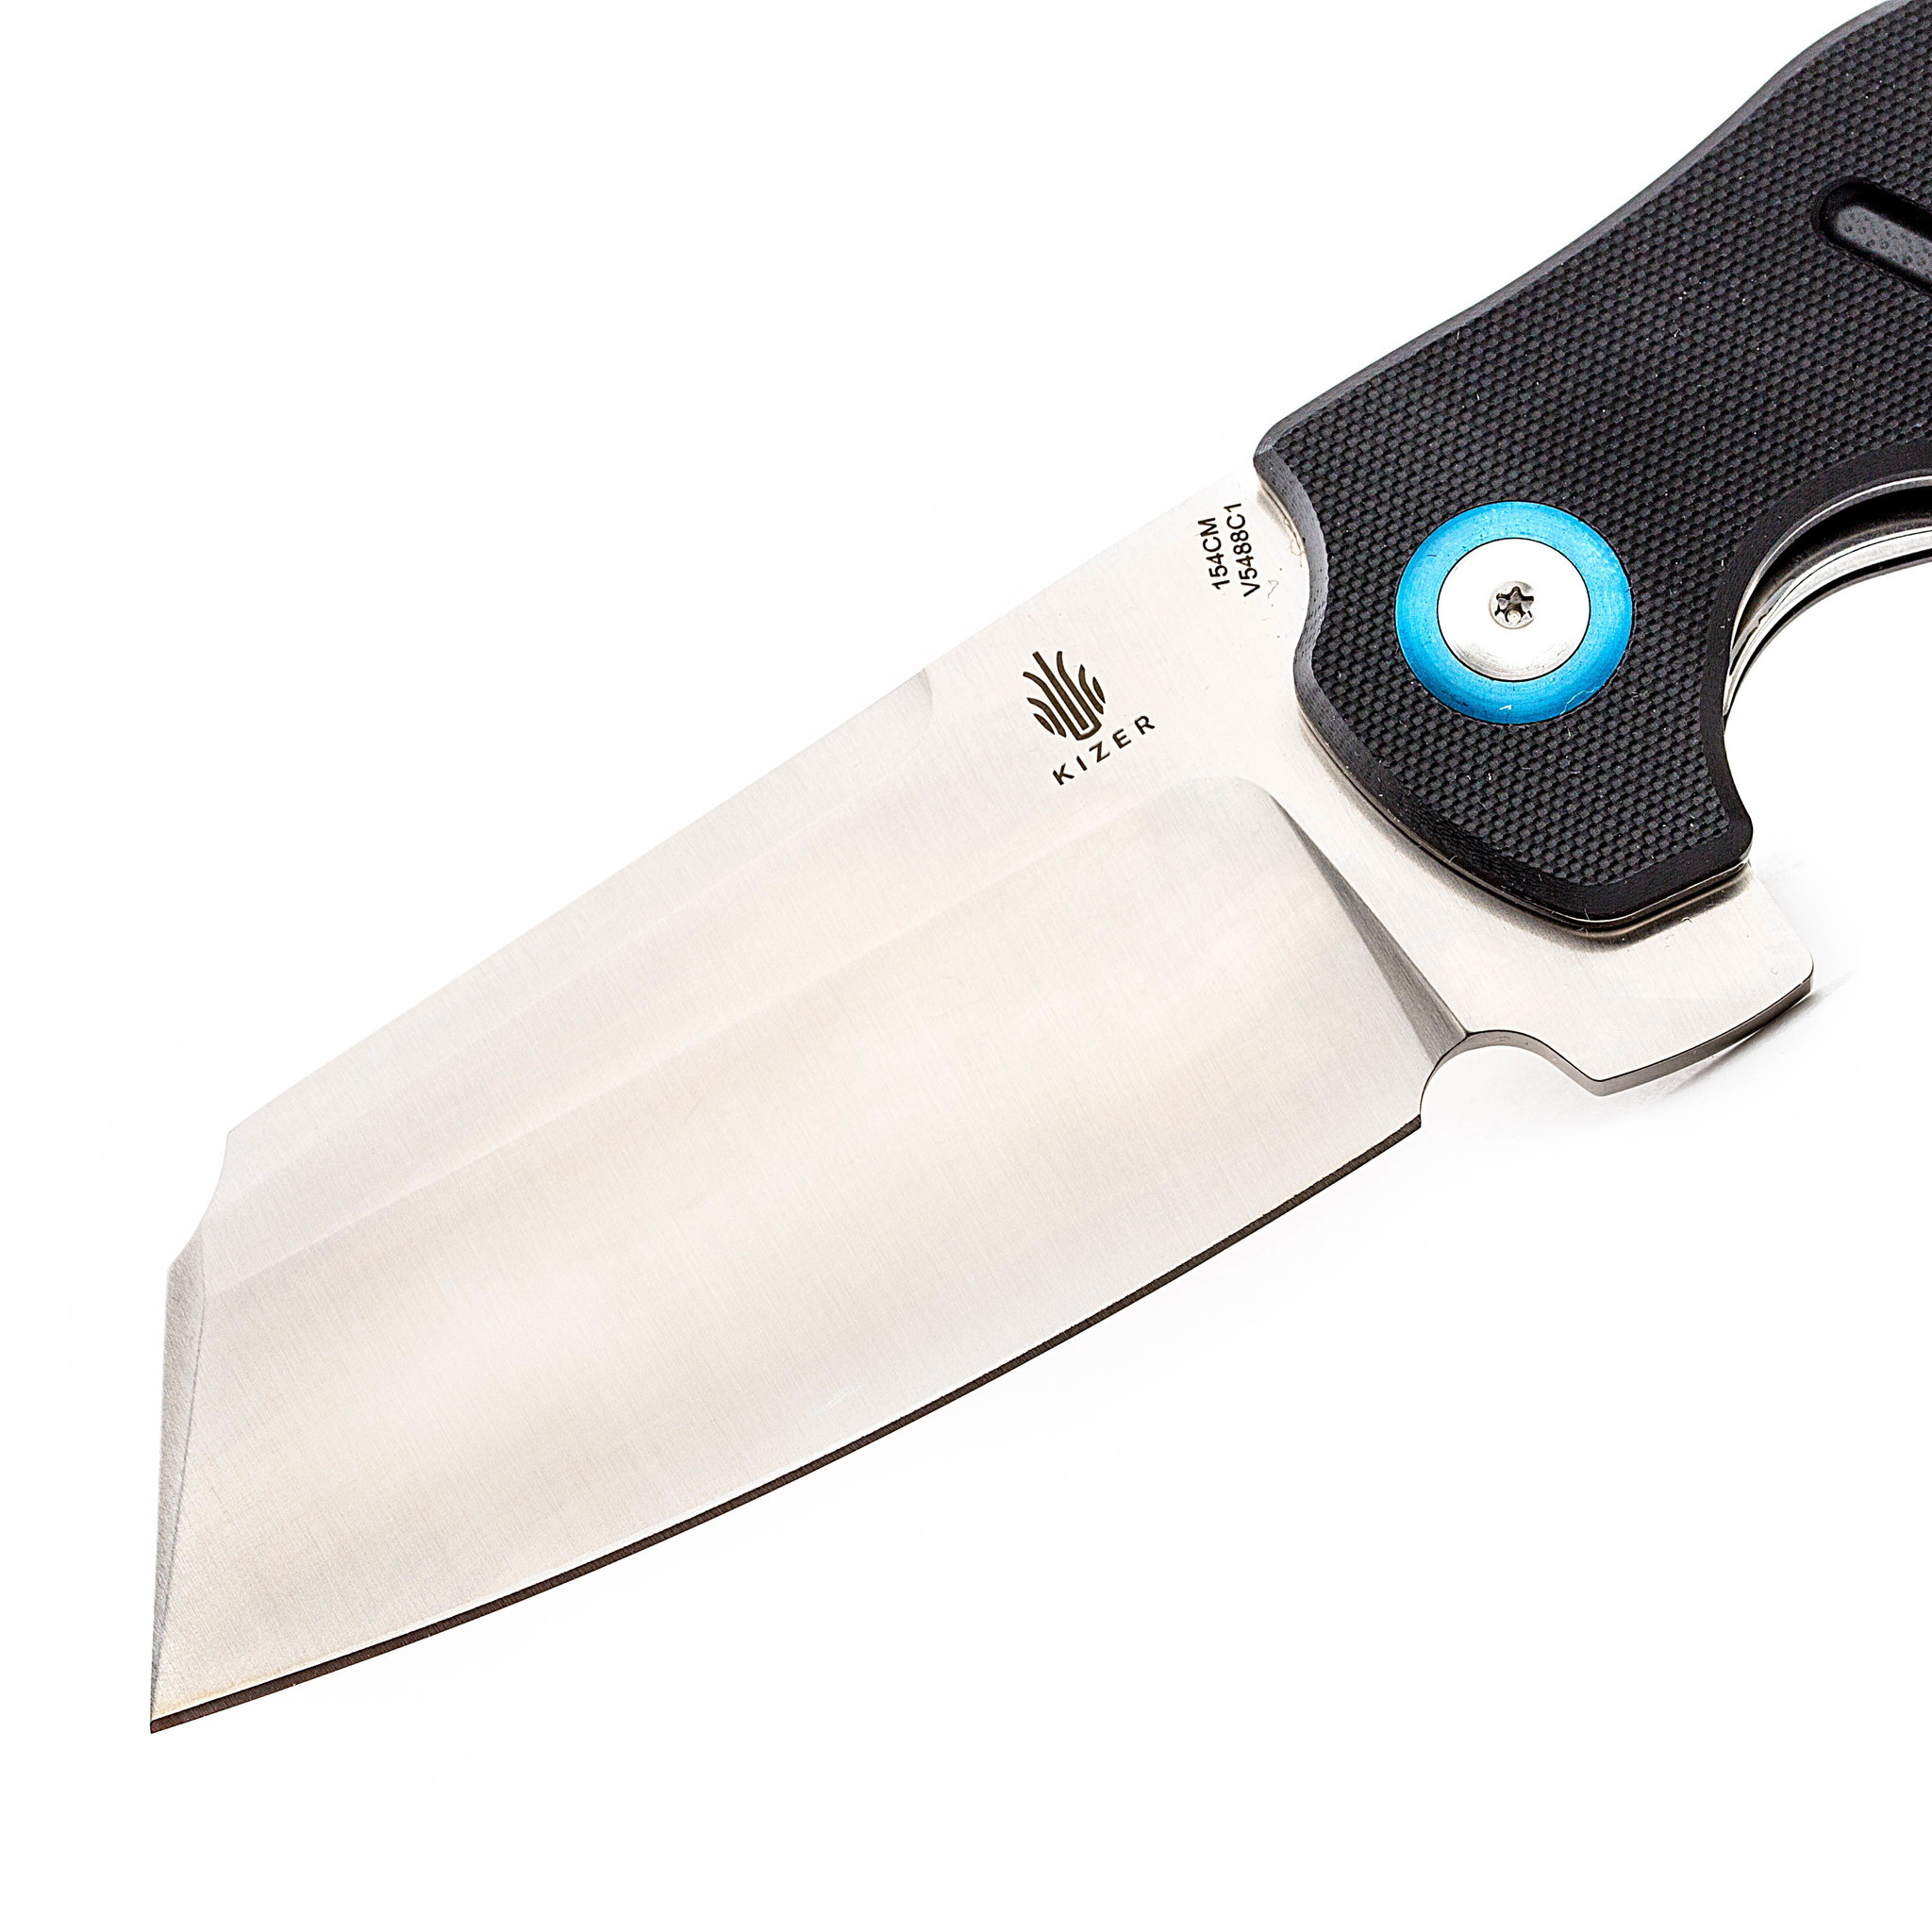 Складной нож Kizer C01C XL, сталь 154CM, рукоять черная G10 - фото 2